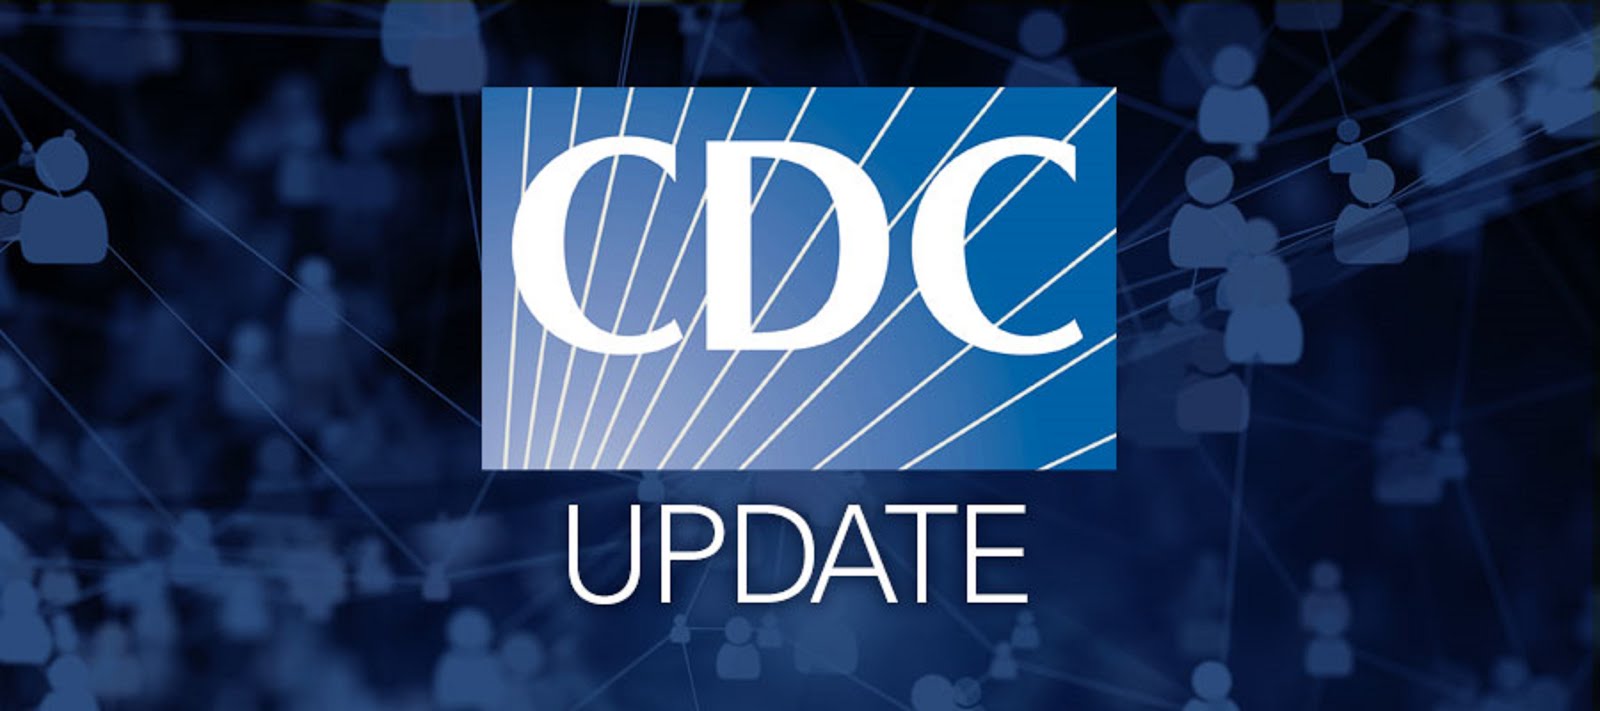 CDC UPDATE